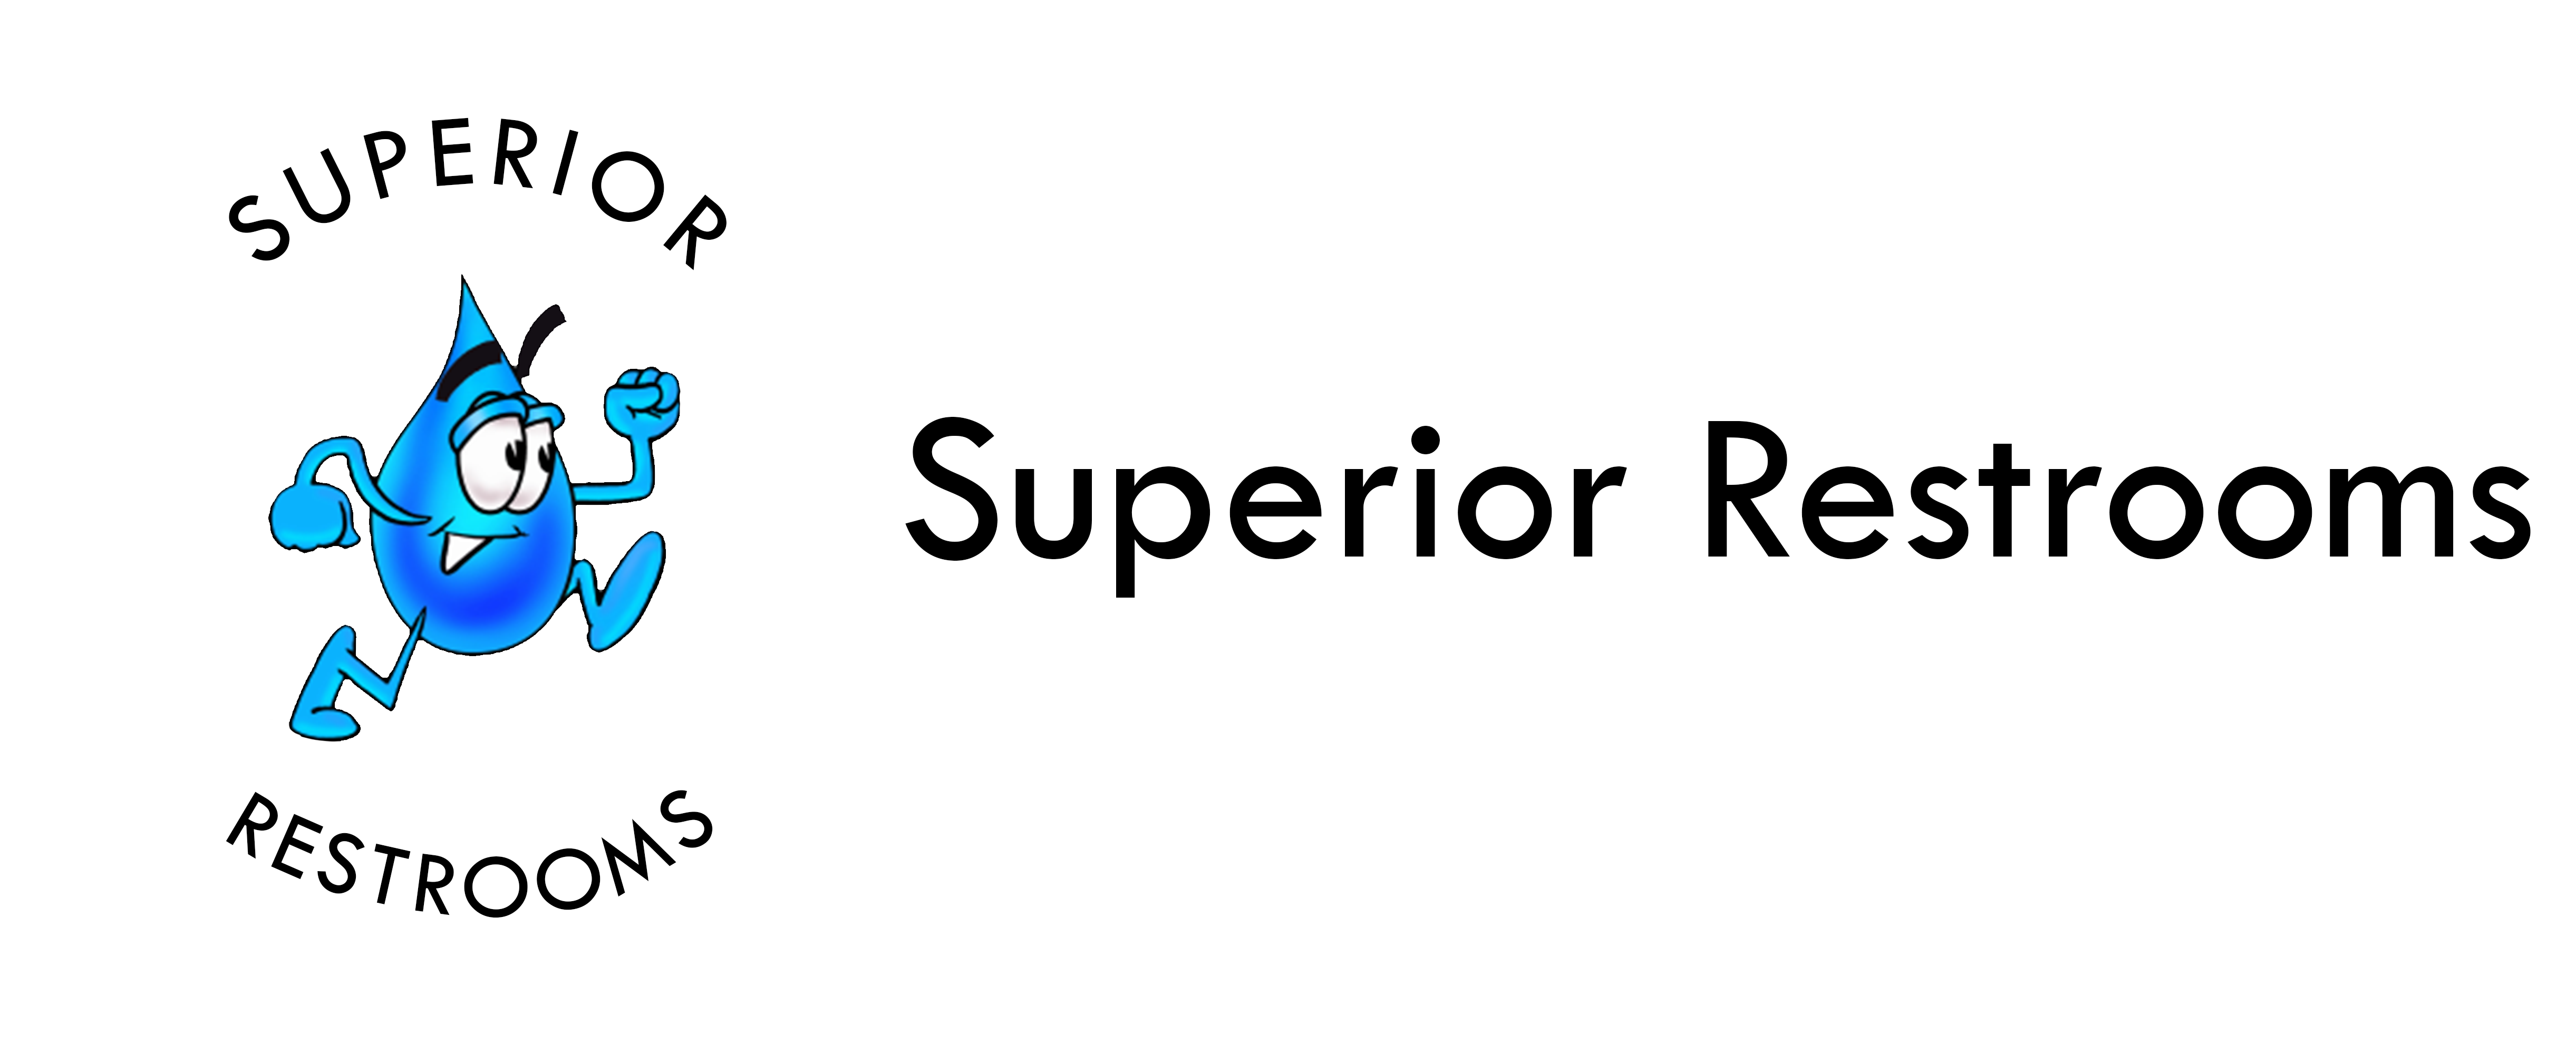 Superior Restrooms